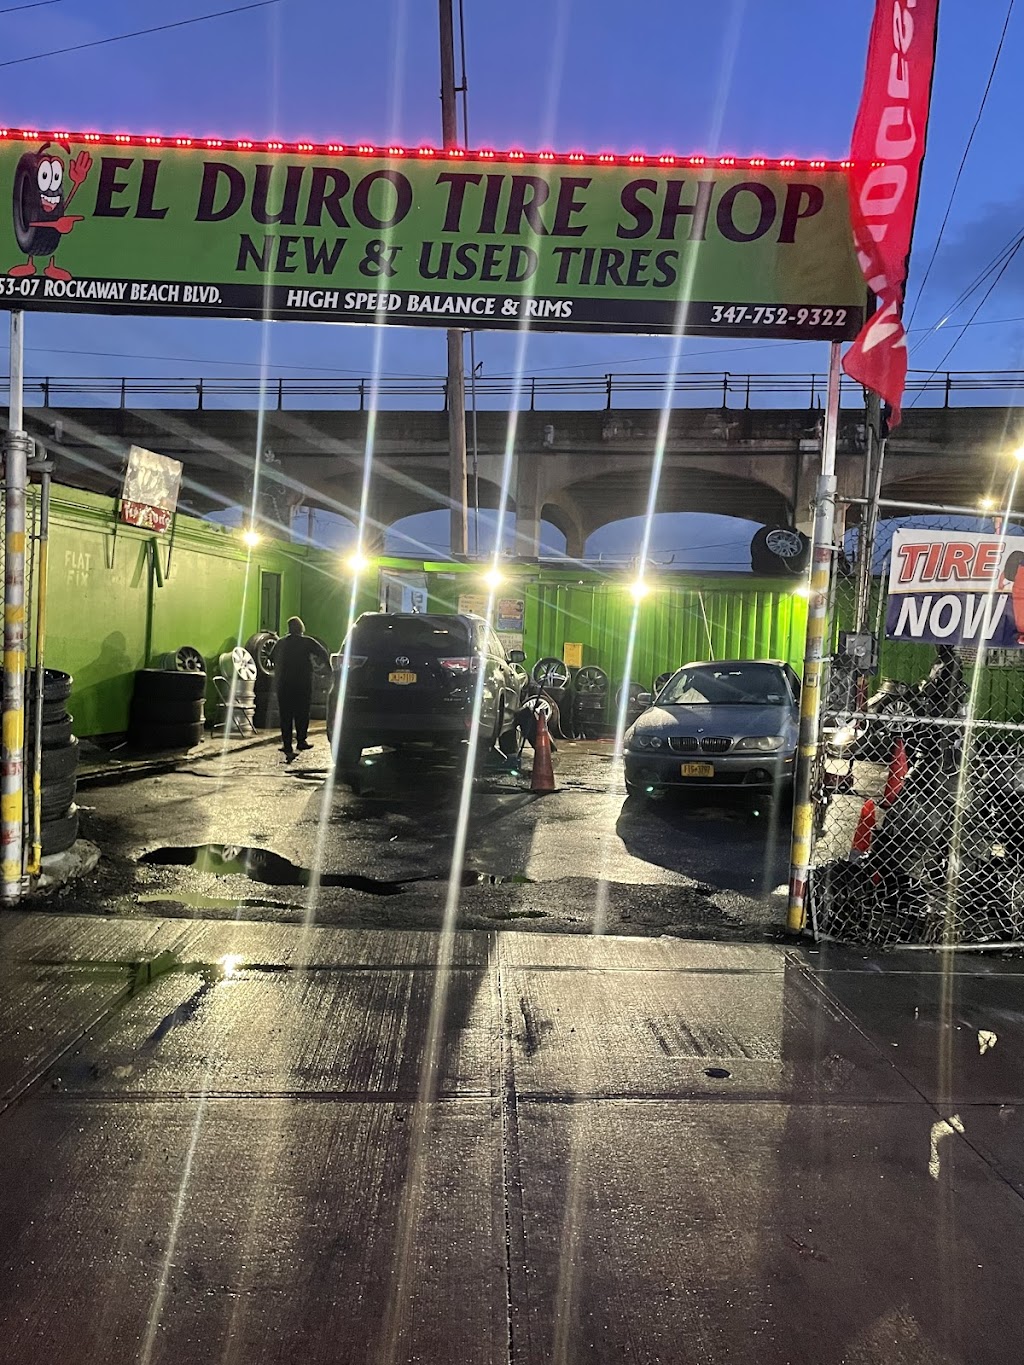 El Duro Tire Shop | 53-07 Rockaway Beach Blvd, Queens, NY 11691 | Phone: (347) 752-9322